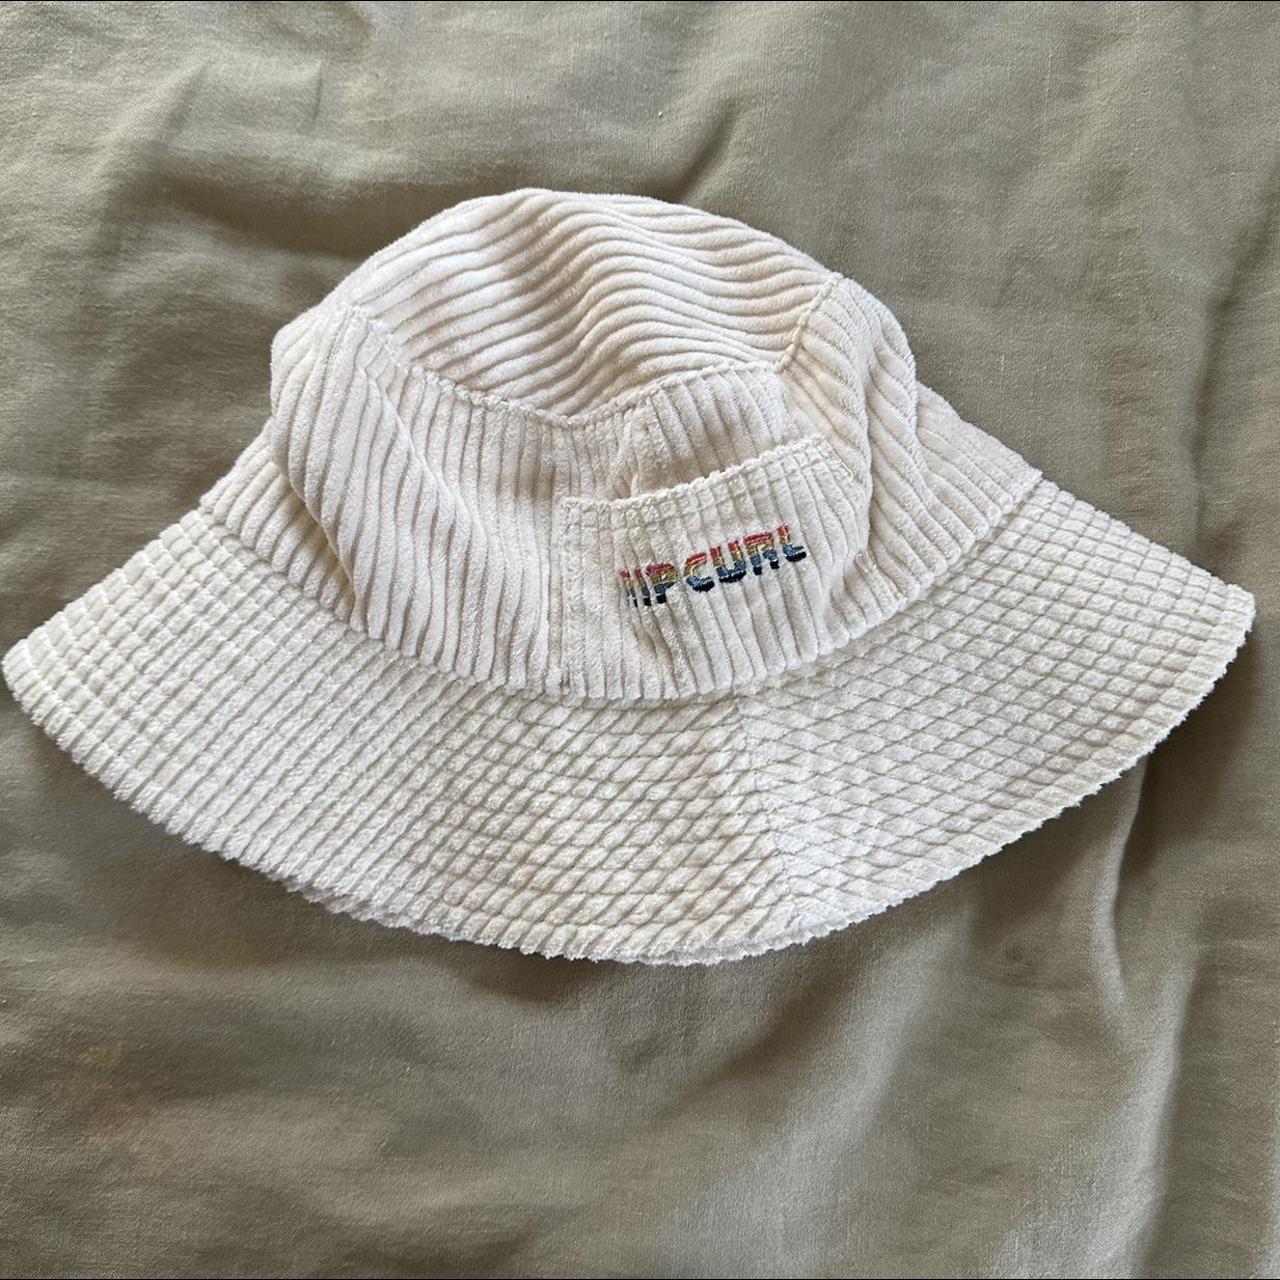 White Corduroy Rip Curl Bucket Hat -multicolor... - Depop